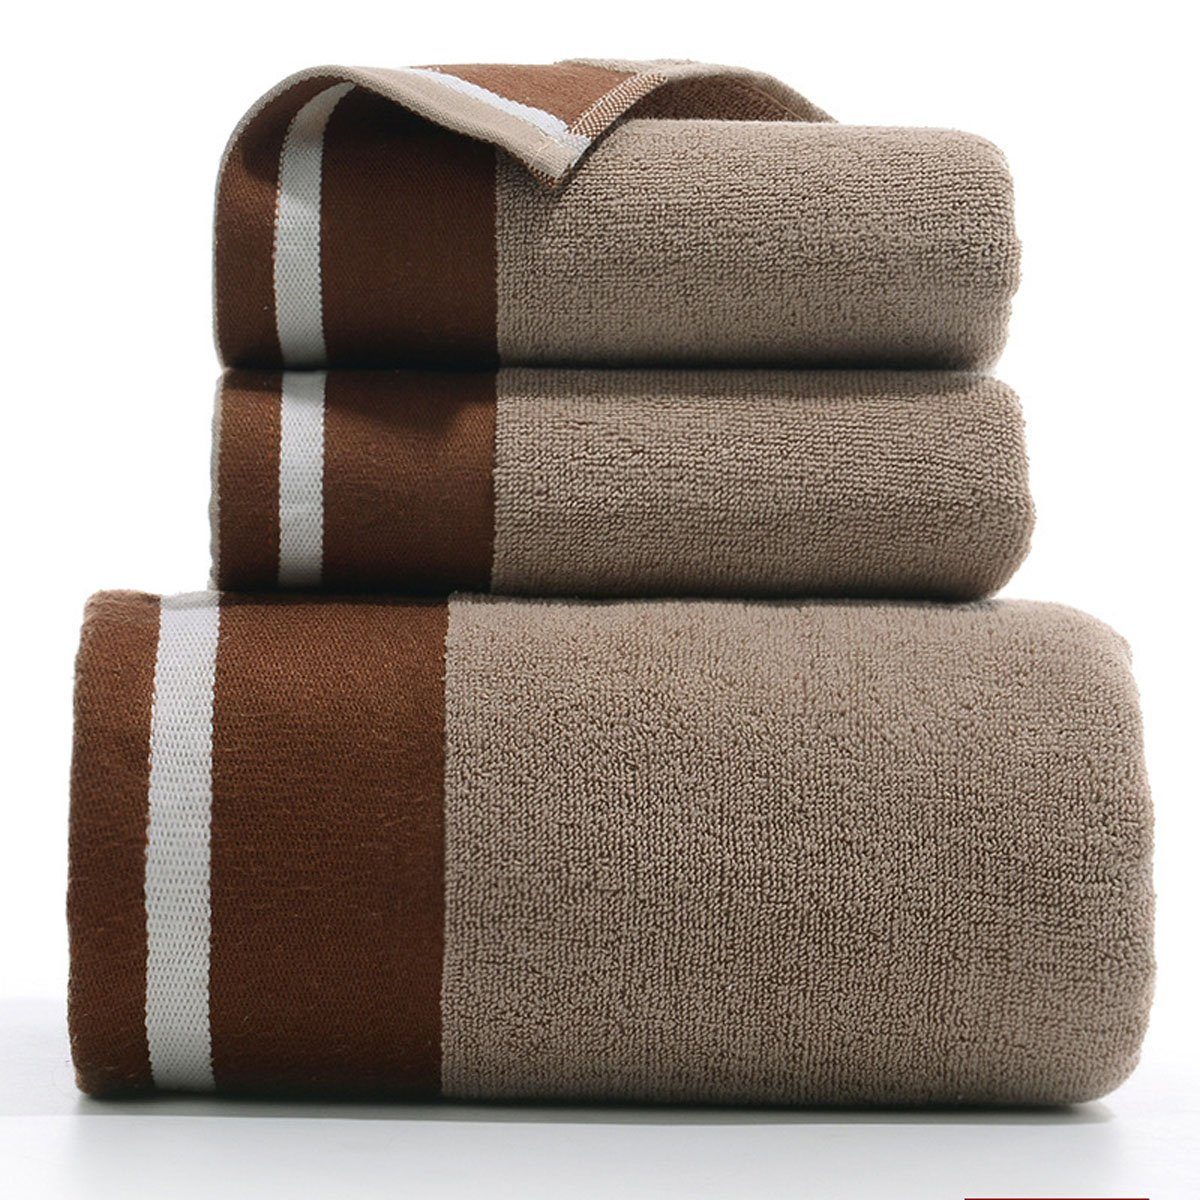 Hause Set-2xHandtuch,1xBadetuch,saugfähig weich,für Handtuch Jormftte zu und Set Braun Handtücher